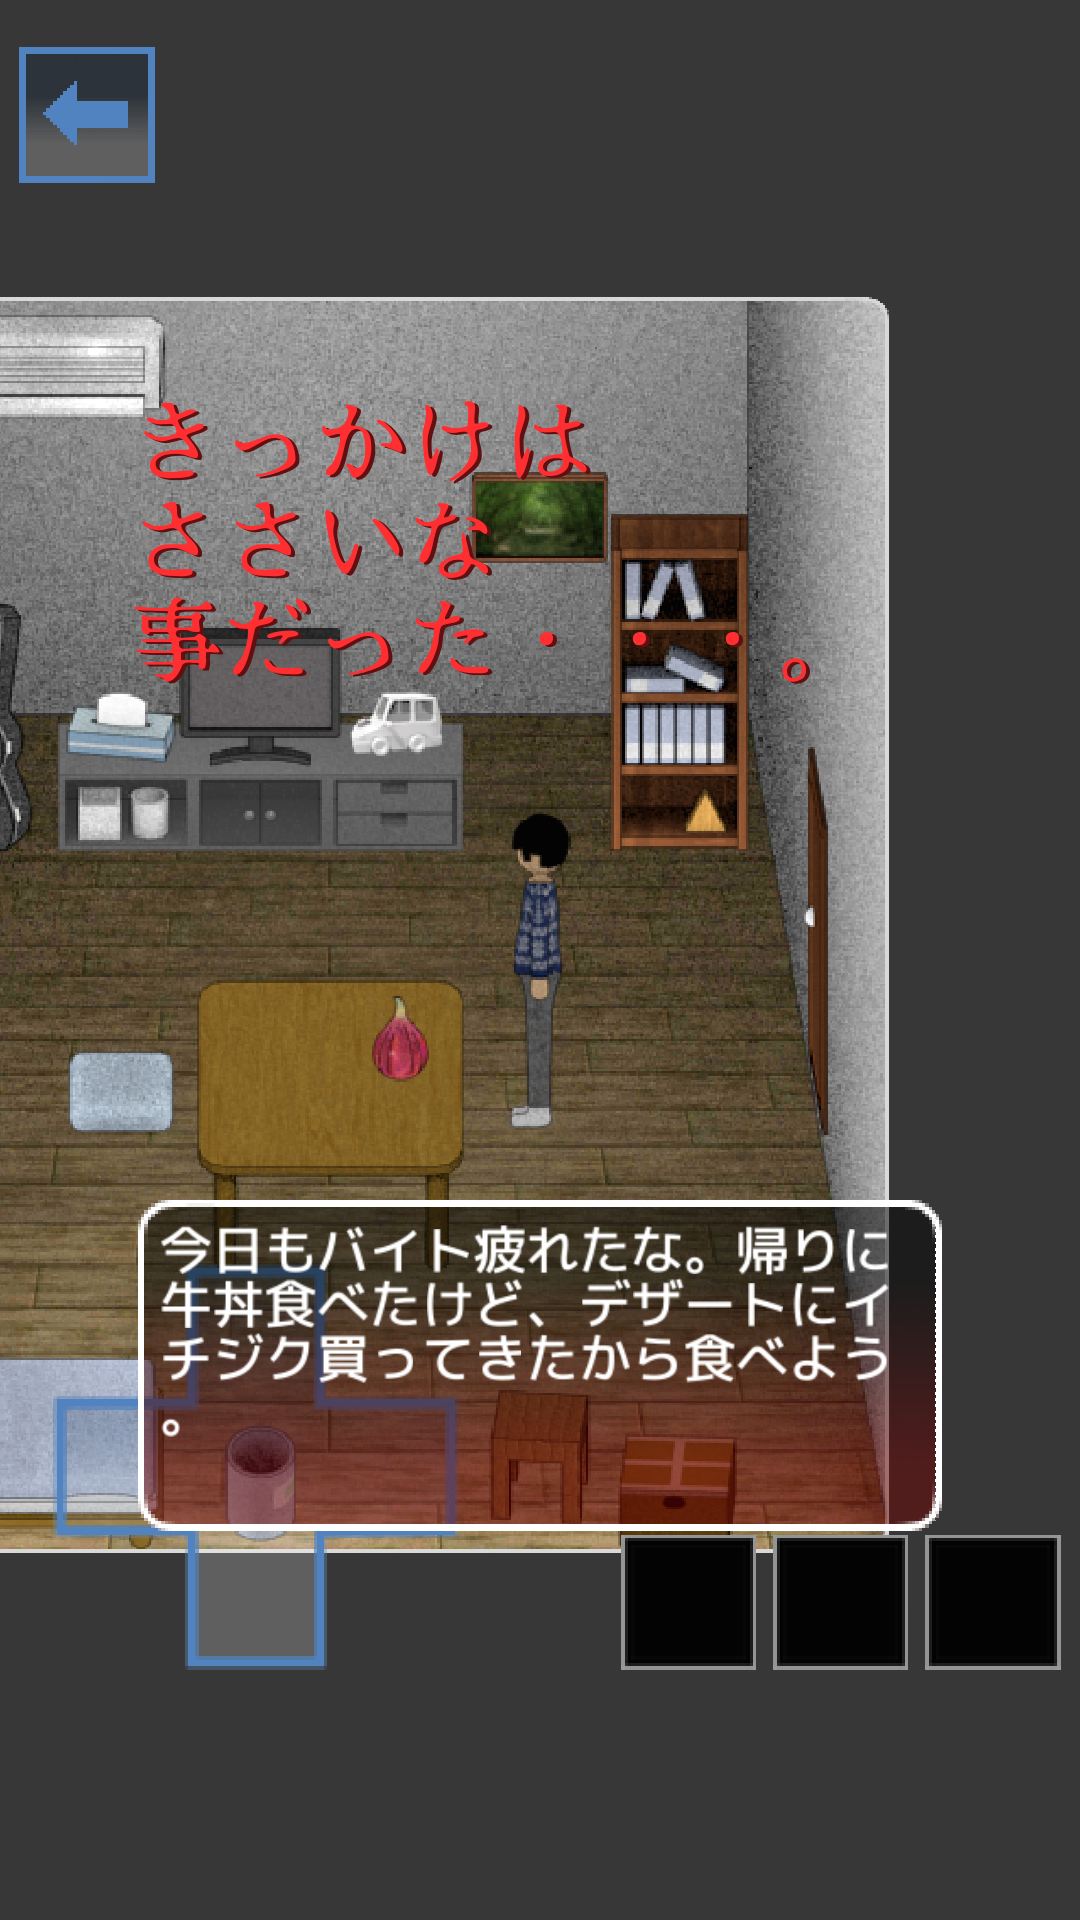 Screenshot 1 of ထိတ်လန့်စရာ Ichijiku မှလွတ်မြောက်ပါ။ 1.2.2